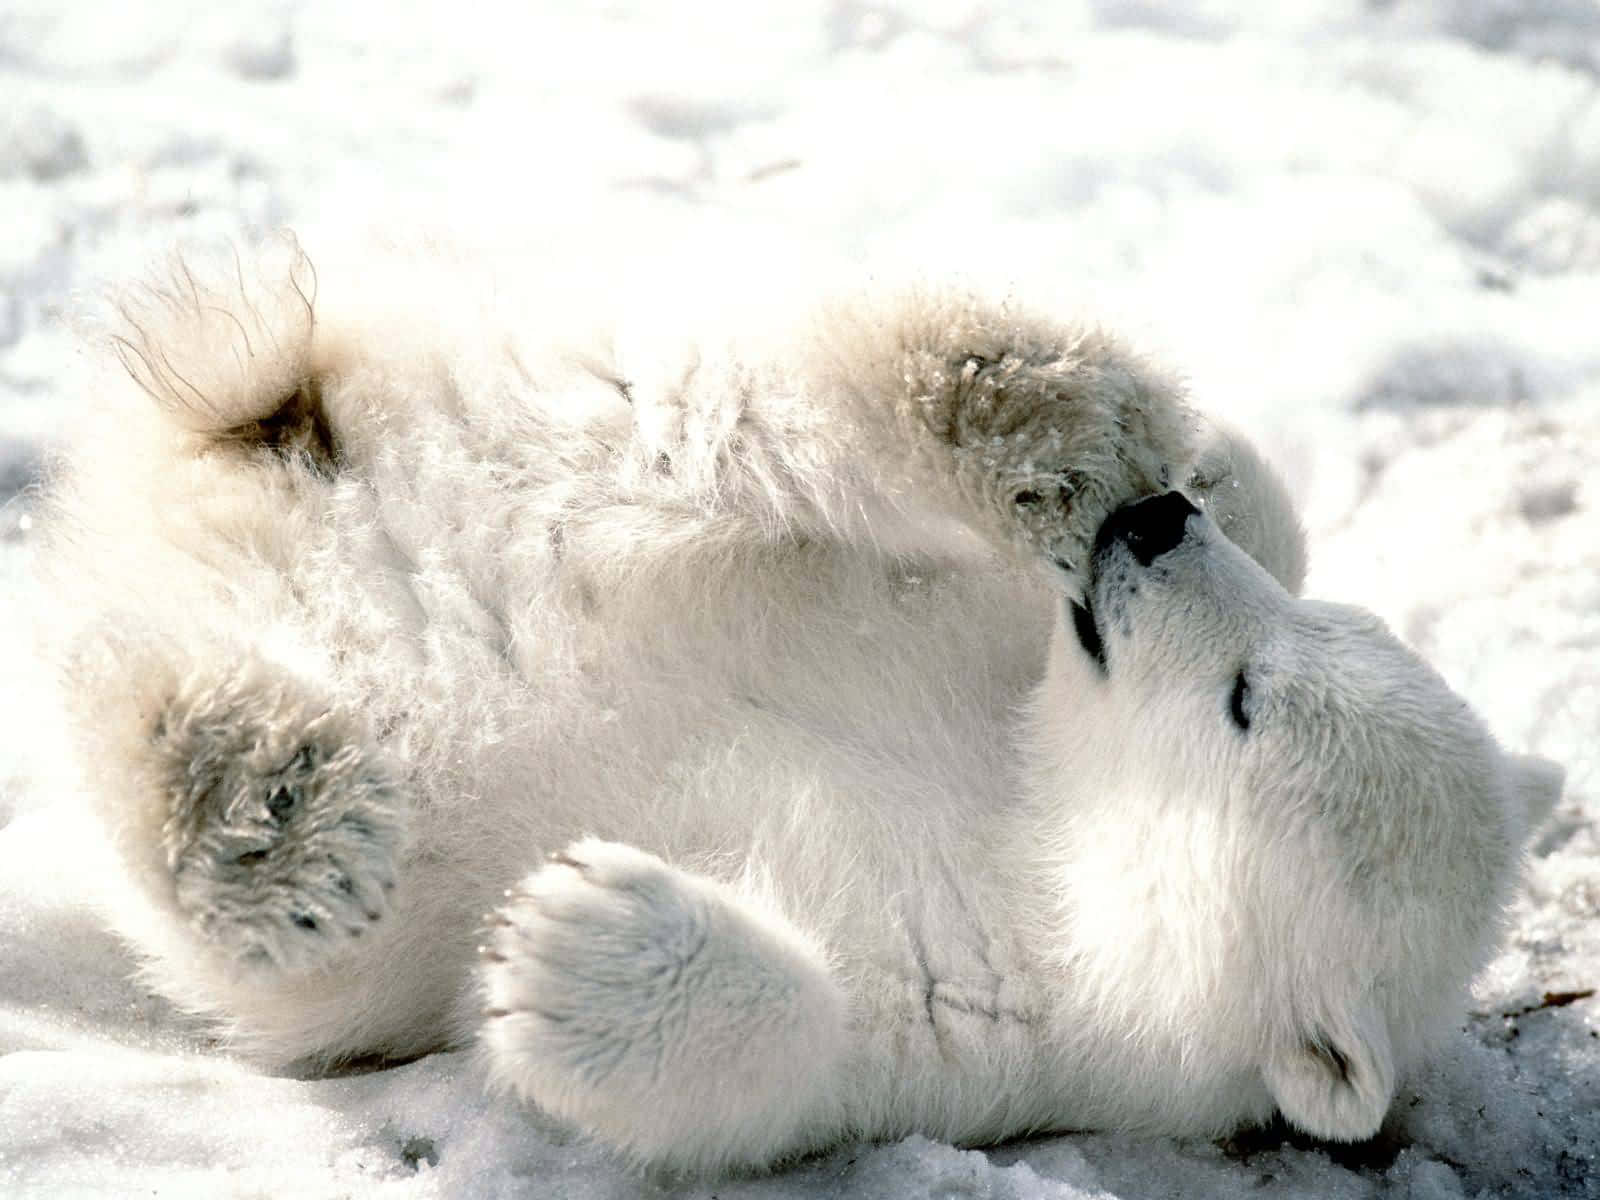 Diesmajestätische Eisbär Steht Majestätisch In Seiner Atemberaubenden Lebensumgebung.